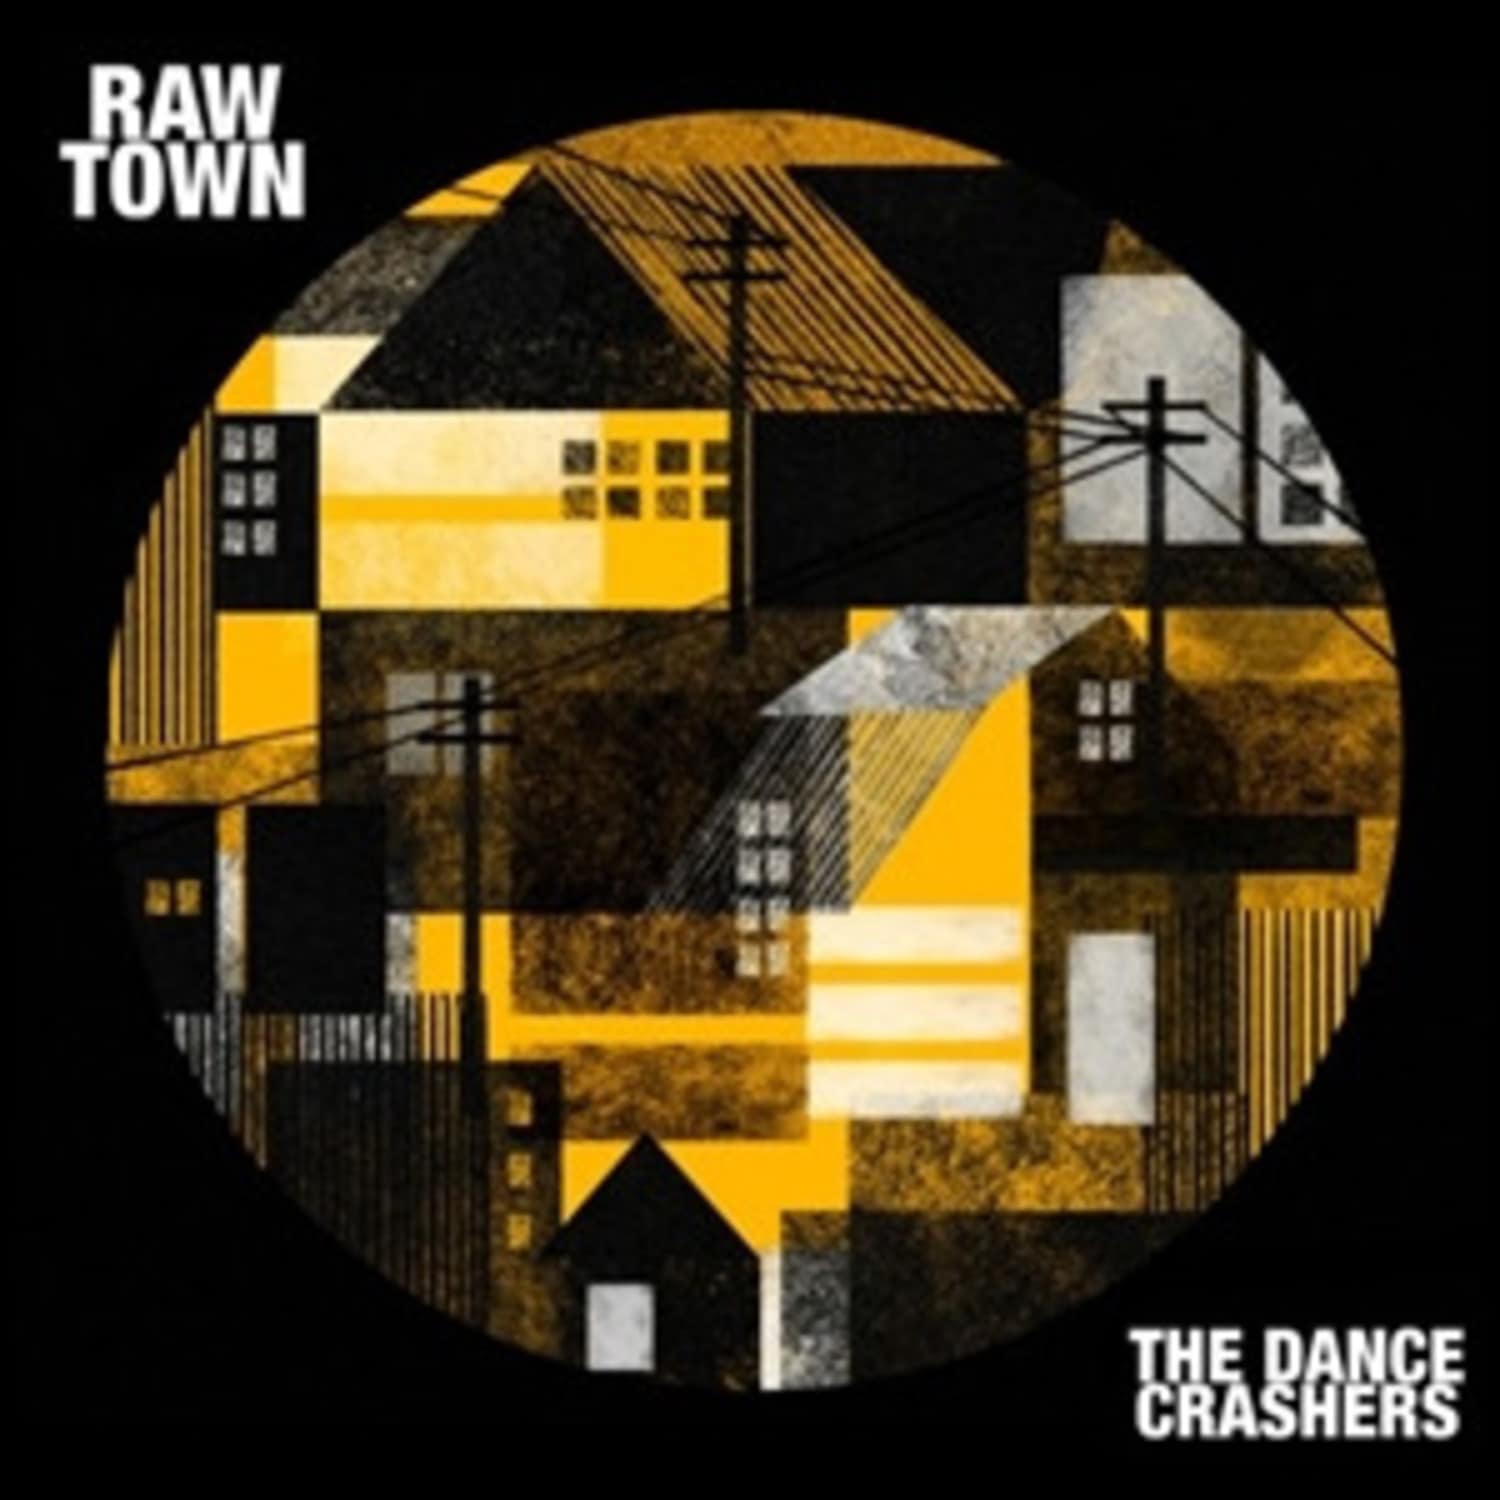 The Dance Crashers - RAWTOWN 